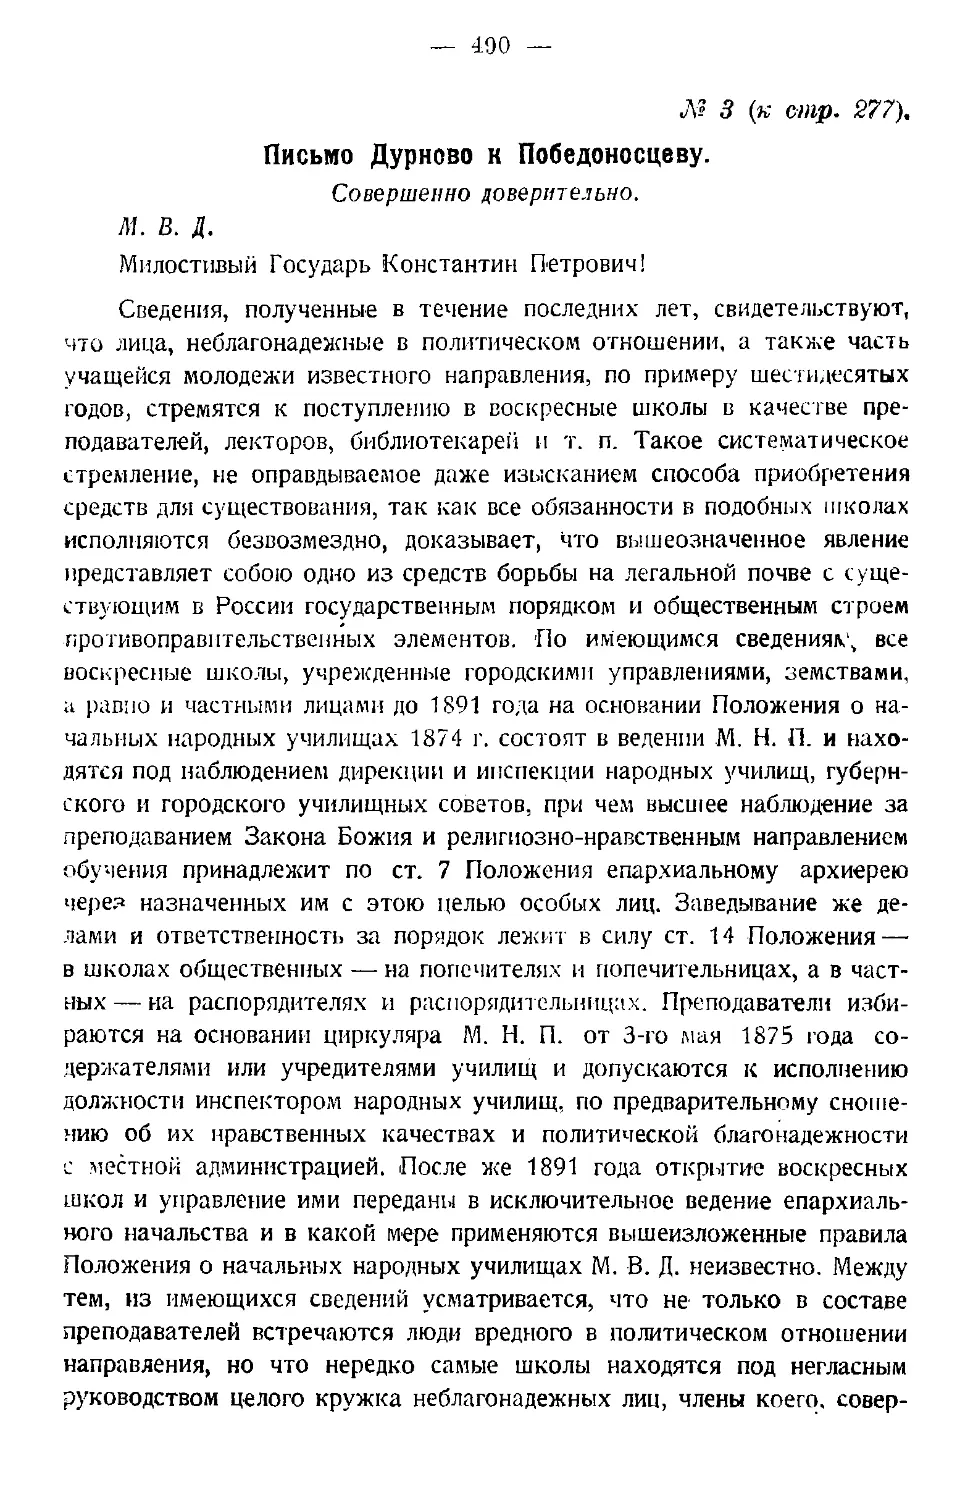 3. Письмо Дурново к Победоносцеву — 18 марта 1895 г.